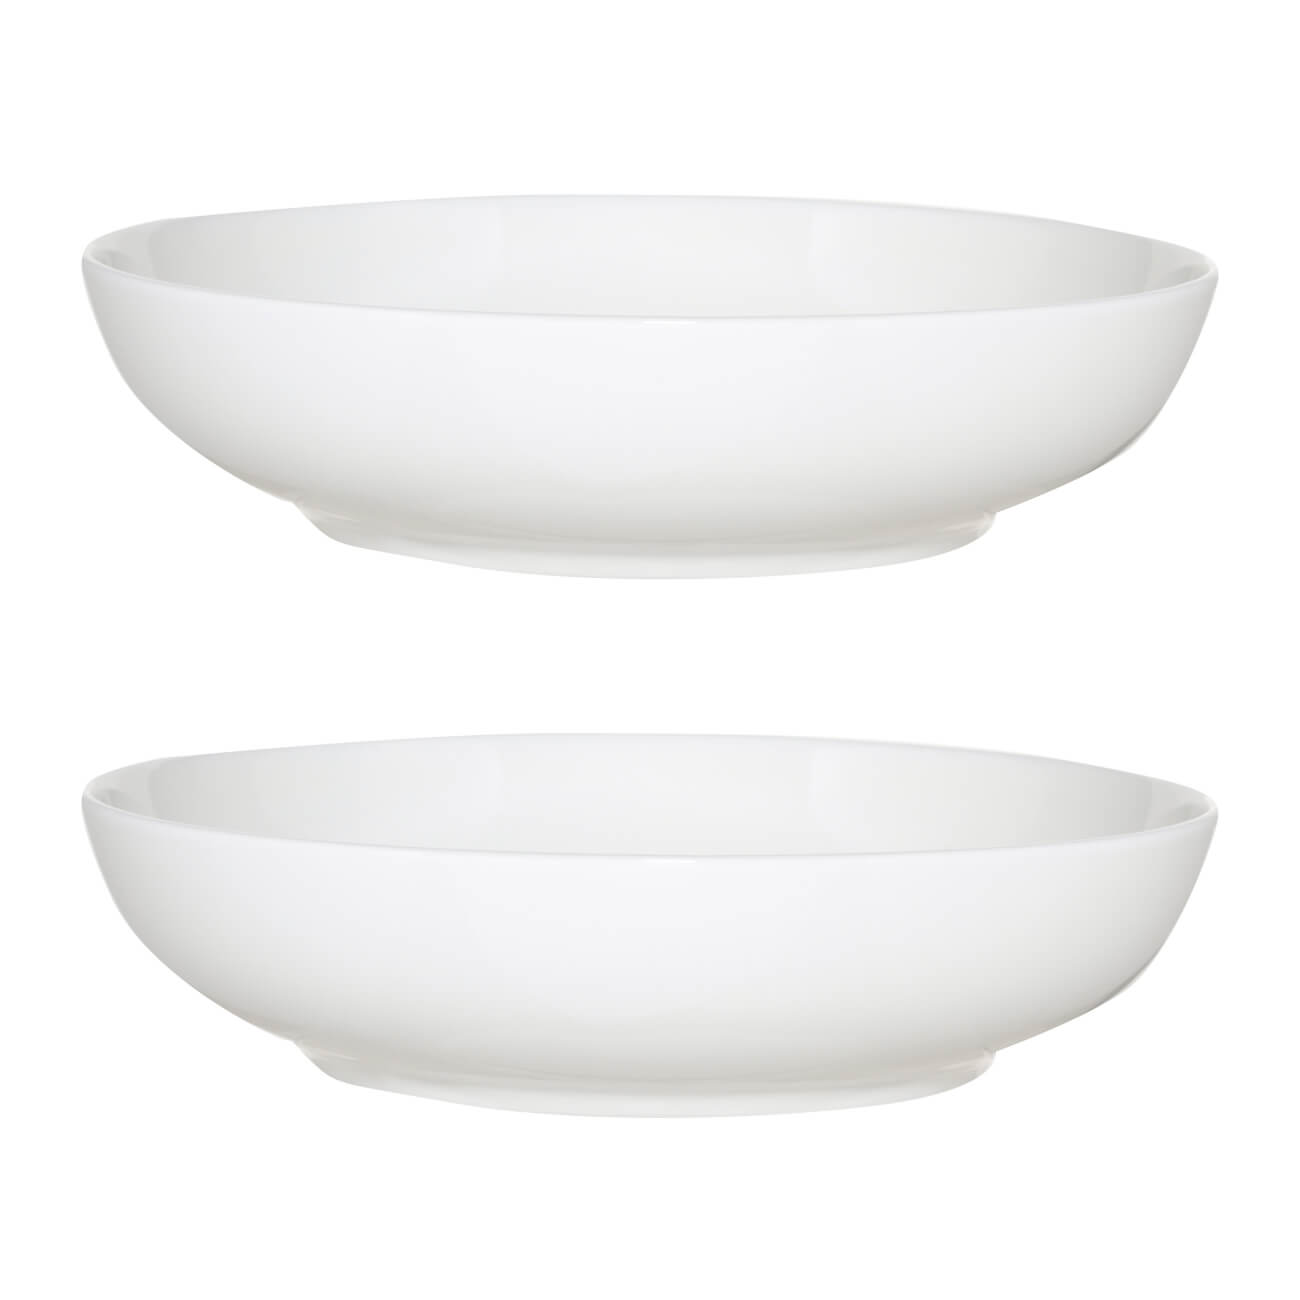 Тарелка суповая, 20х5 см, 2 шт, фарфор F, белая, Ideal white тарелка закусочная 24 см 2 шт фарфор f antarctica